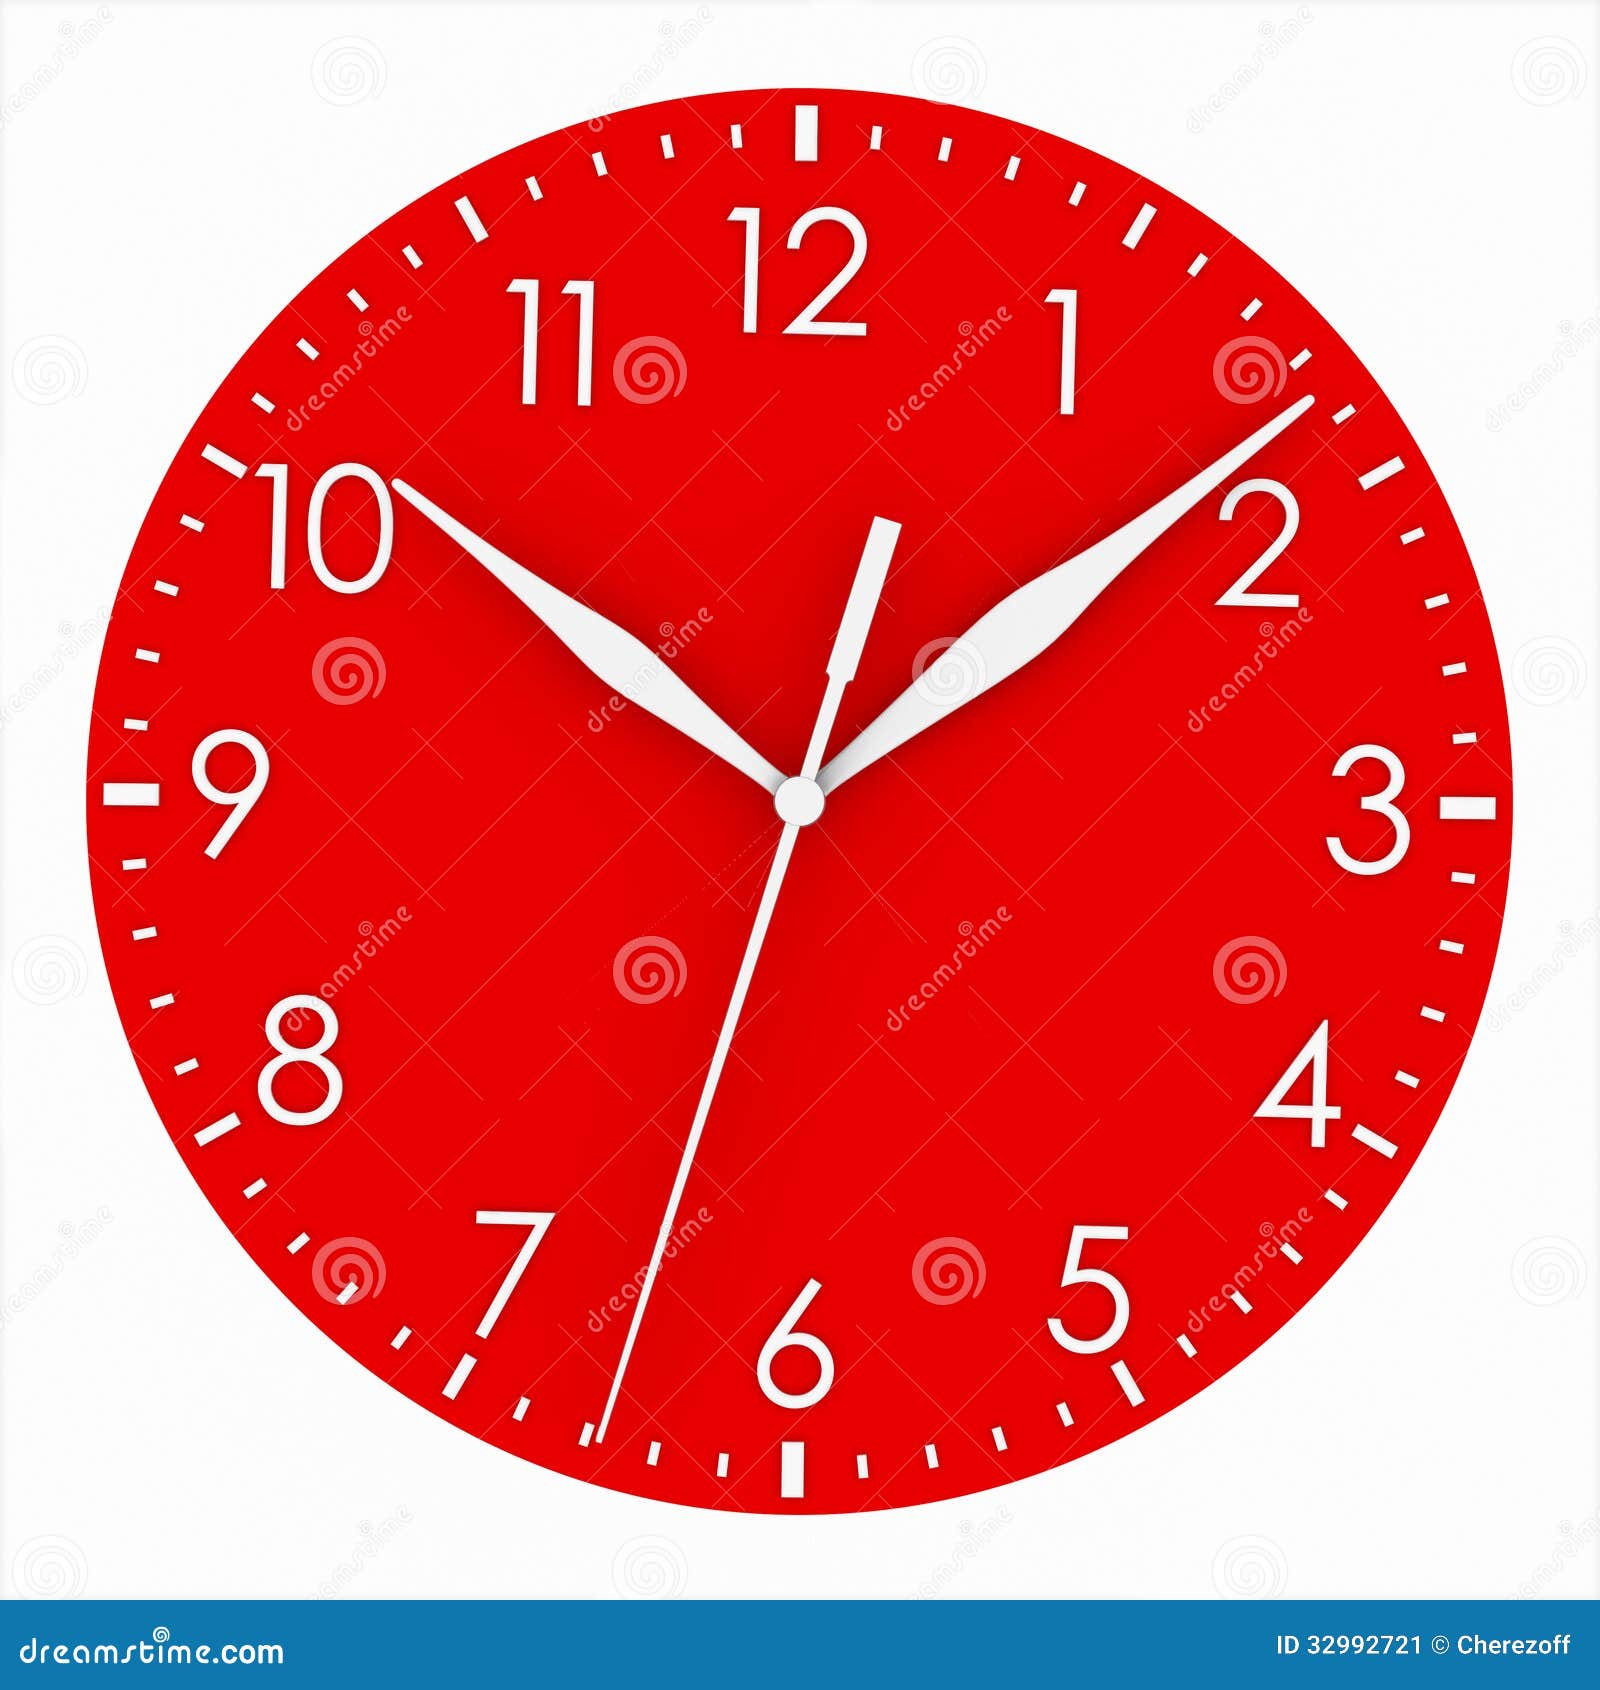 Mặt đồng hồ đỏ (Red clock face): Với mặt đồng hồ đỏ tươi sáng tuyệt đẹp, chiếc đồng hồ này sẽ khiến bạn chú ý ngay lập tức. Nó vừa nổi bật, hiện đại và tinh tế. Bạn chắc chắn sẽ không muốn bỏ qua cơ hội để sở hữu chiếc đồng hồ này trong bộ sưu tập của mình, hãy xem hình ảnh và cảm nhận về sự đẹp mắt của mặt đồng hồ đỏ.